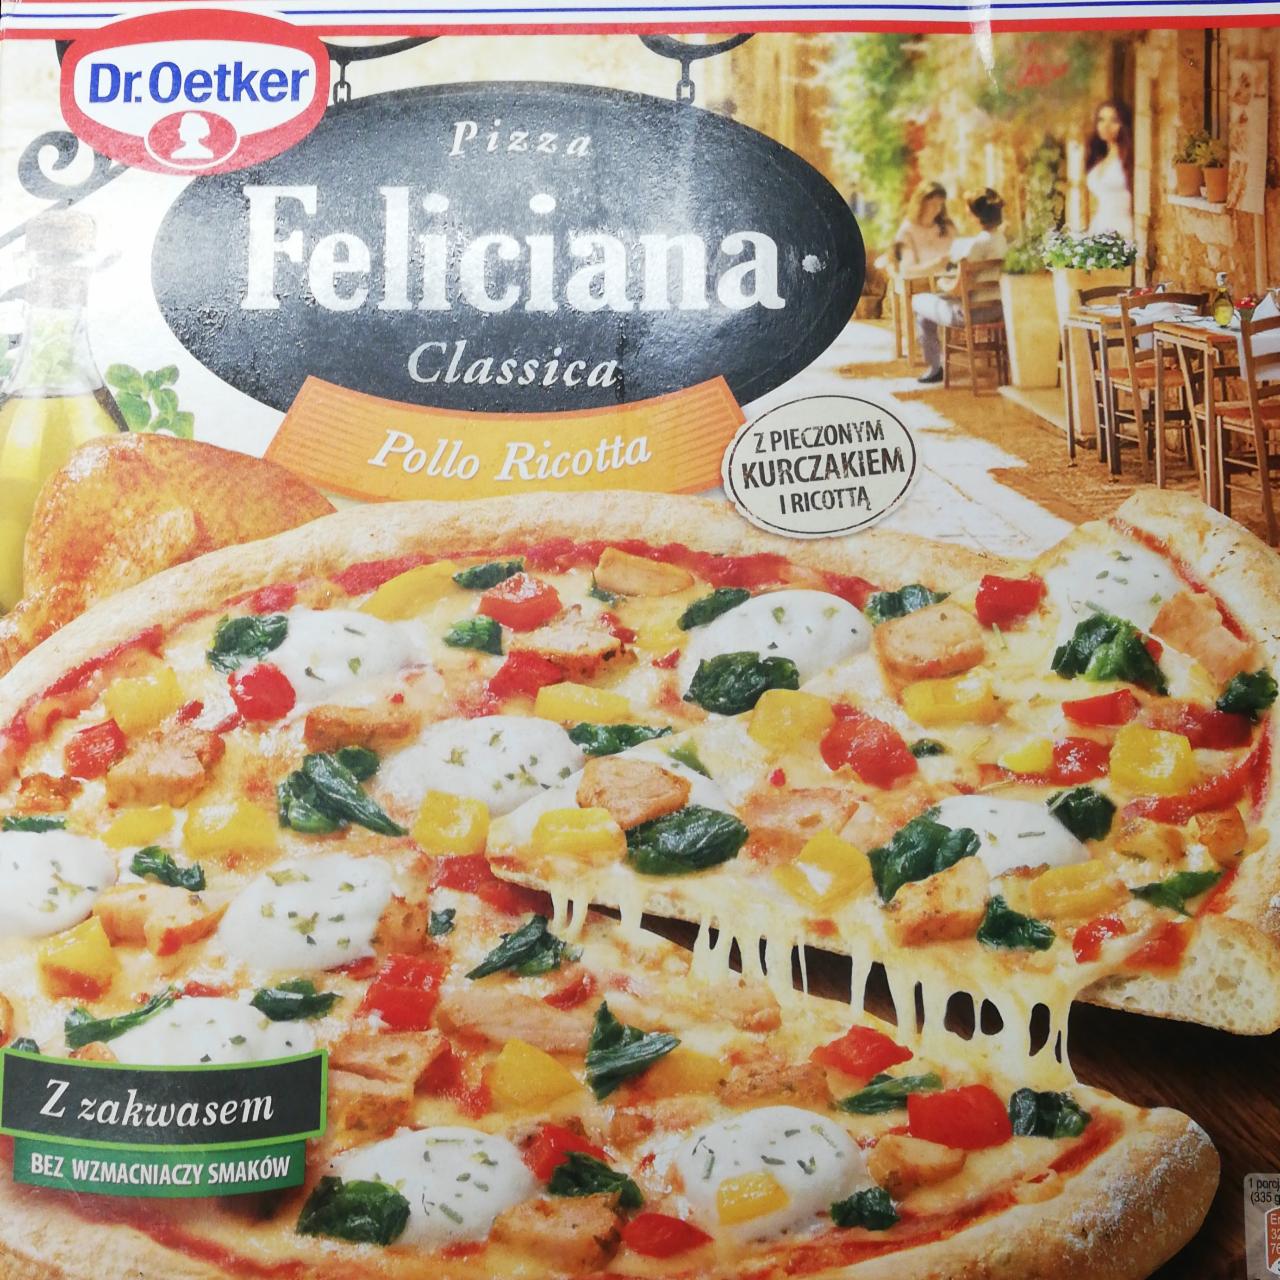 Fotografie - Feliciana Classica Pollo Ricotta Pizza Dr. Oetker